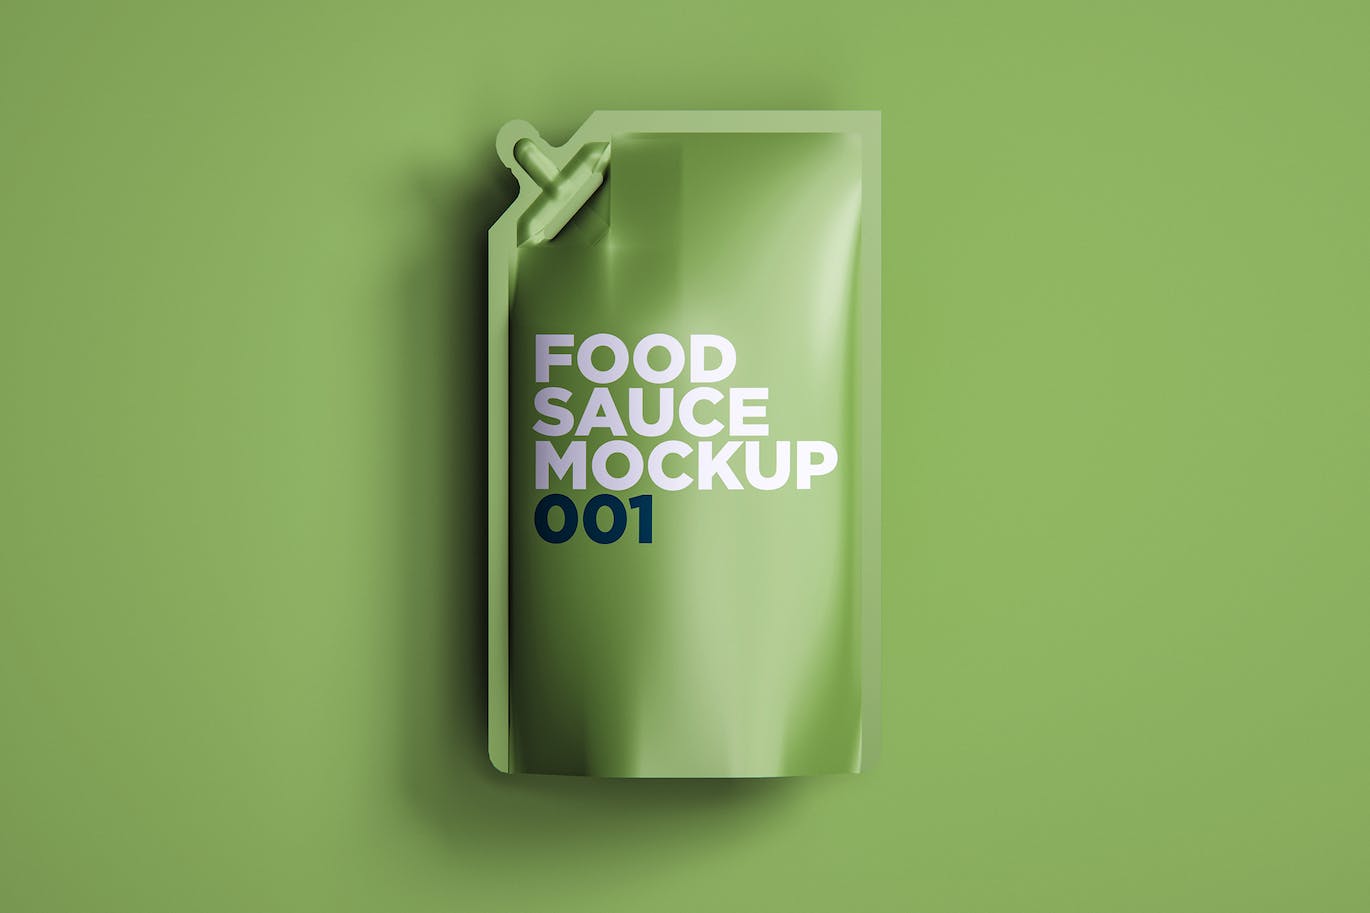 食品酱料袋包装设计样机v1 Food Sauce Mockup 001 样机素材 第1张